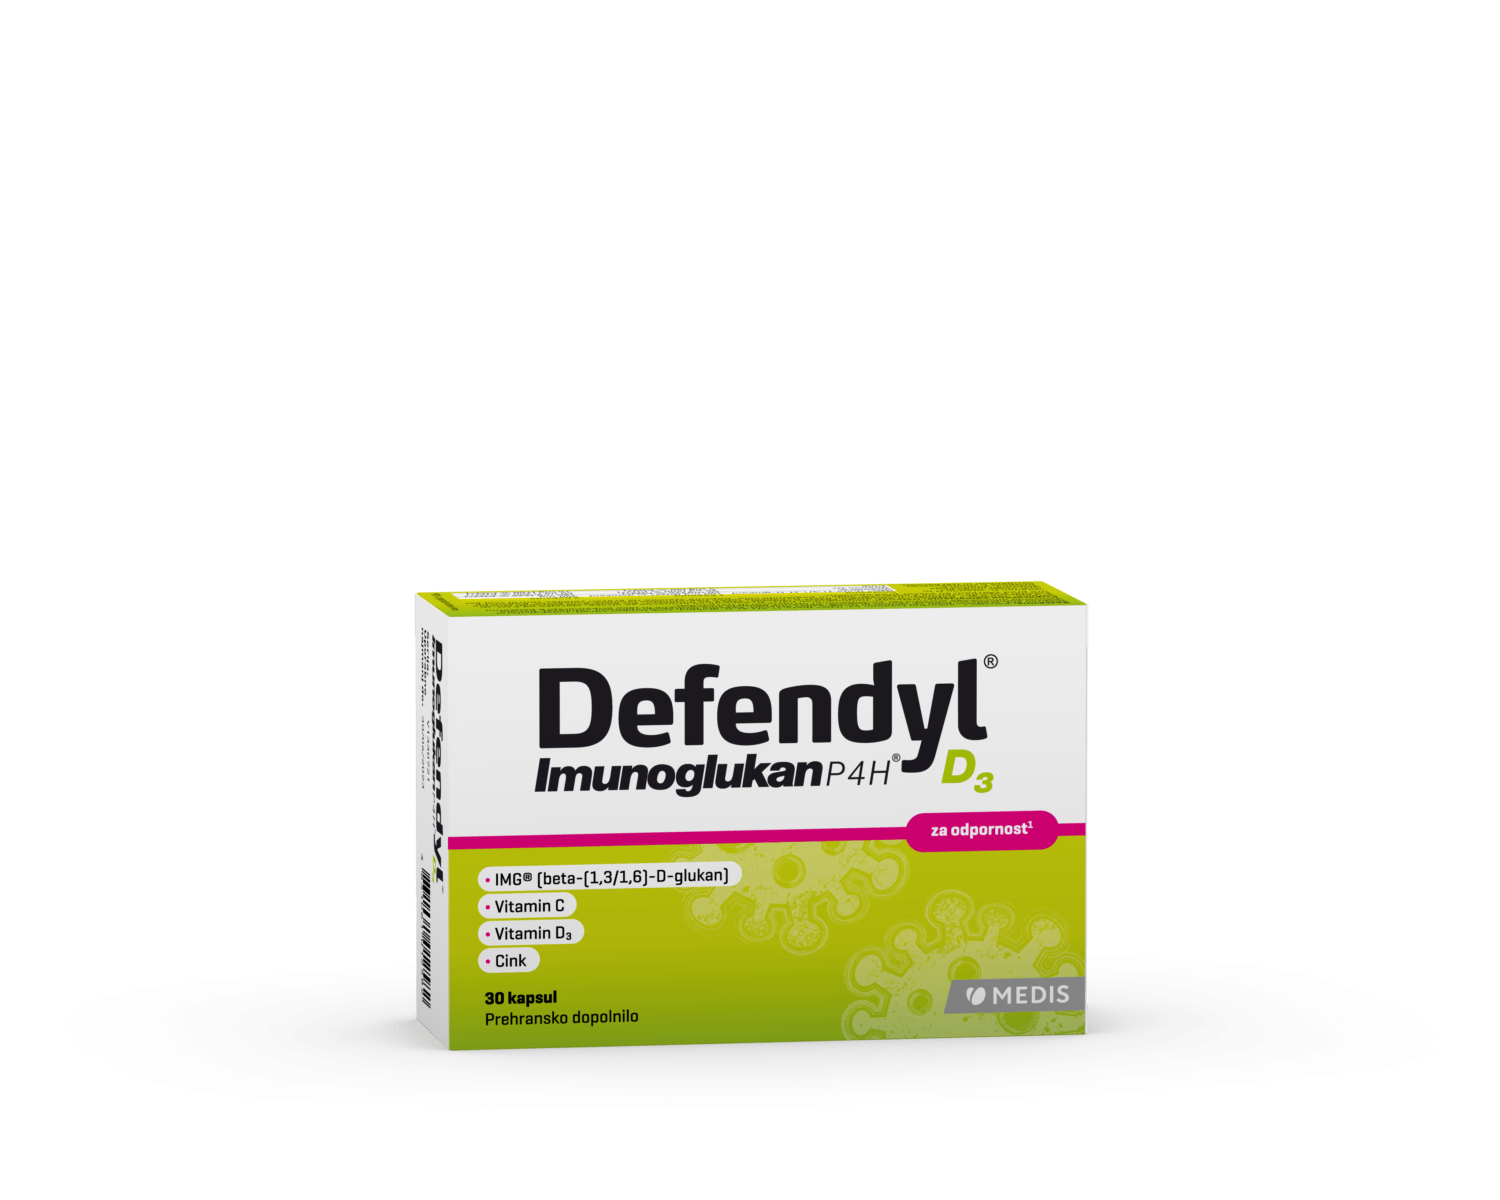 Defendyl-Imunoglukan P4H D3 kapsule, 30 kapsul